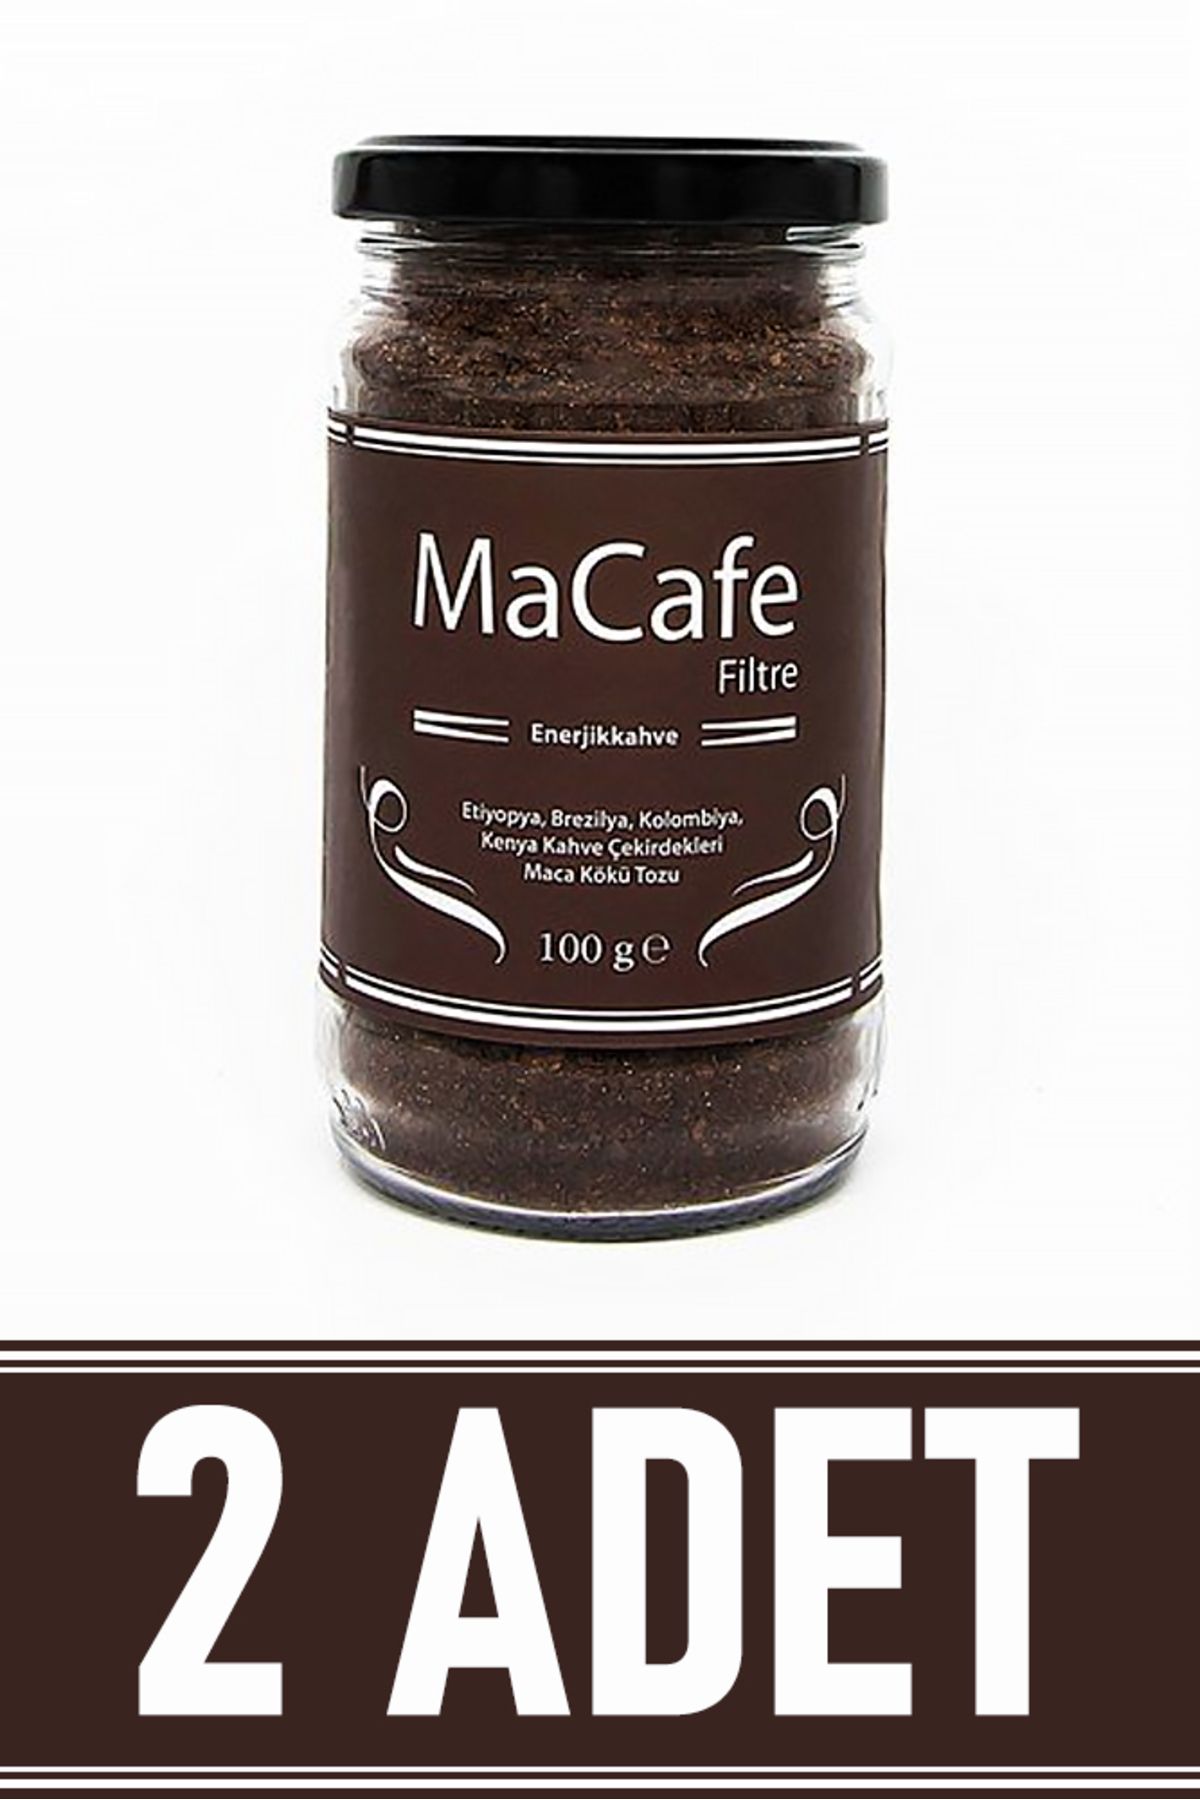 MaCafe Maca Kökü Tozlu Filtre Kahve 100 gr (2 ADET)